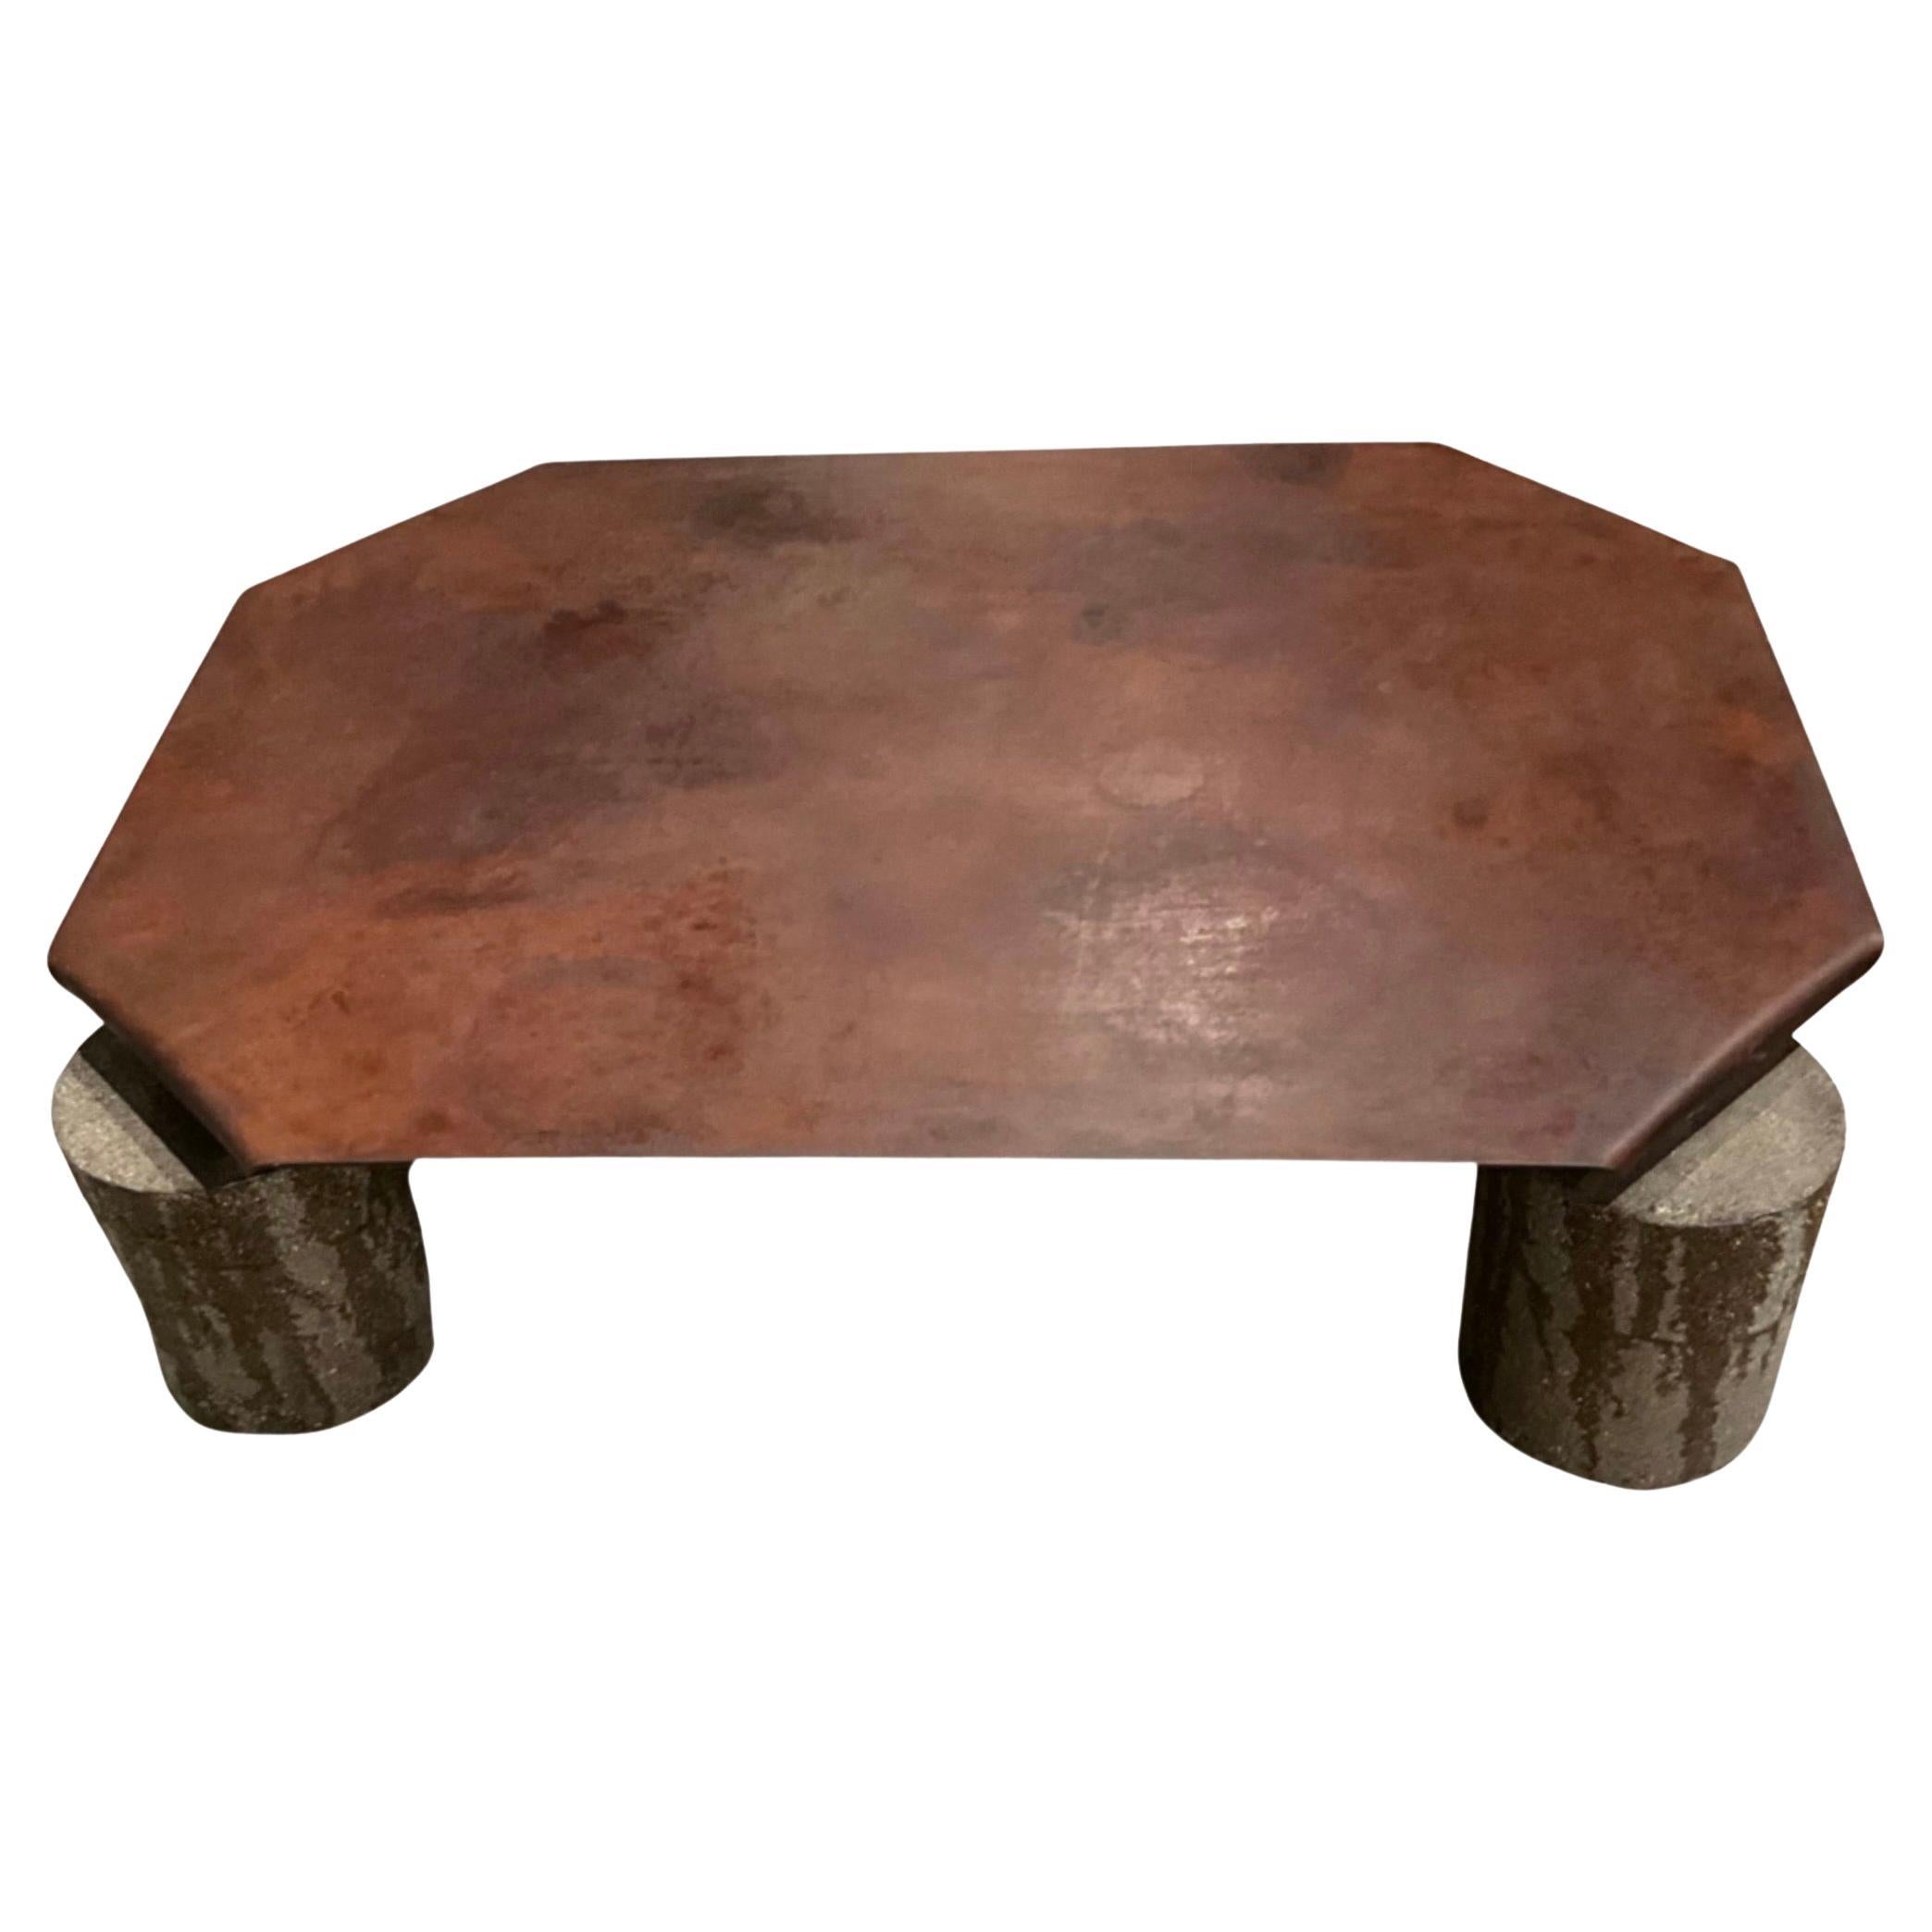 Gefalteter Metall-Ecktisch auf Betonbeinen, Industriestil

Großer rechteckiger Tisch für drinnen und draußen

Rustikale natürliche Patina Metall

     Höhe: 18